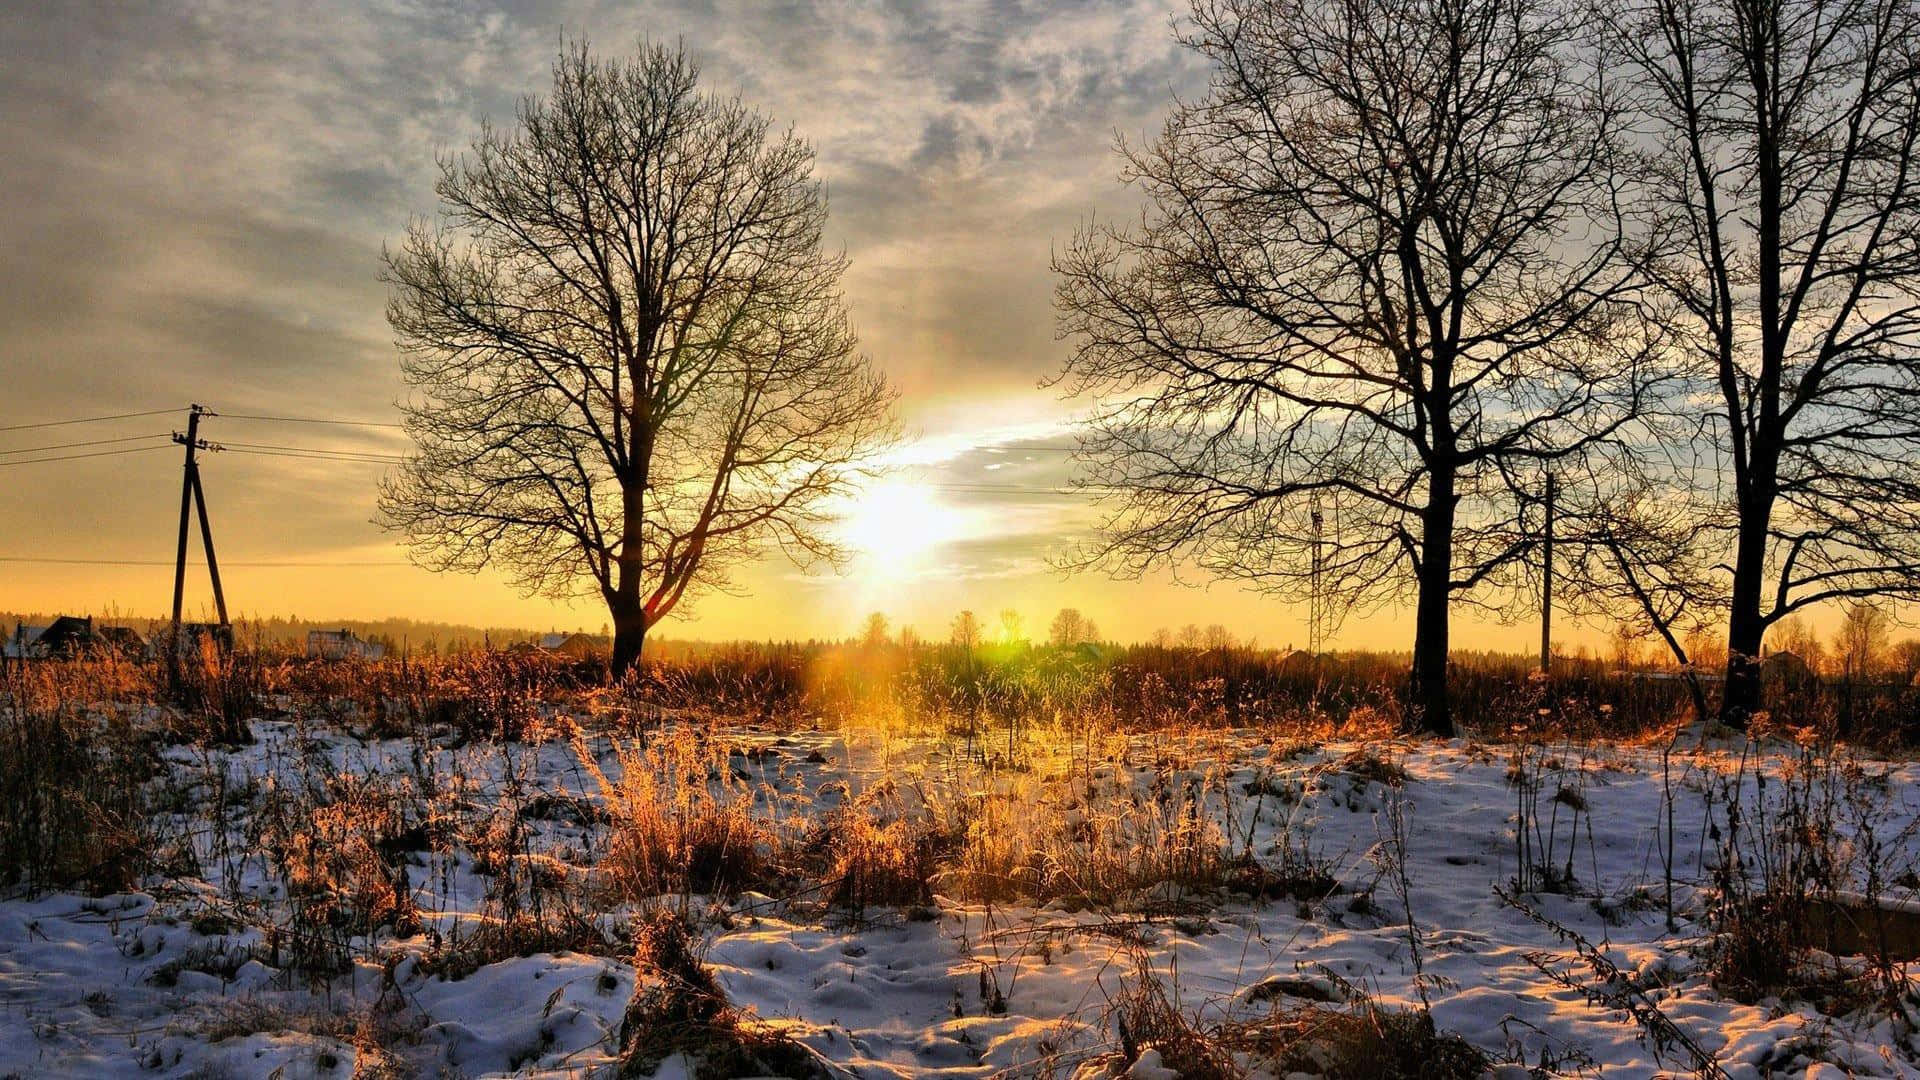 Impresionantepaisaje De Sol De Invierno. Fondo de pantalla